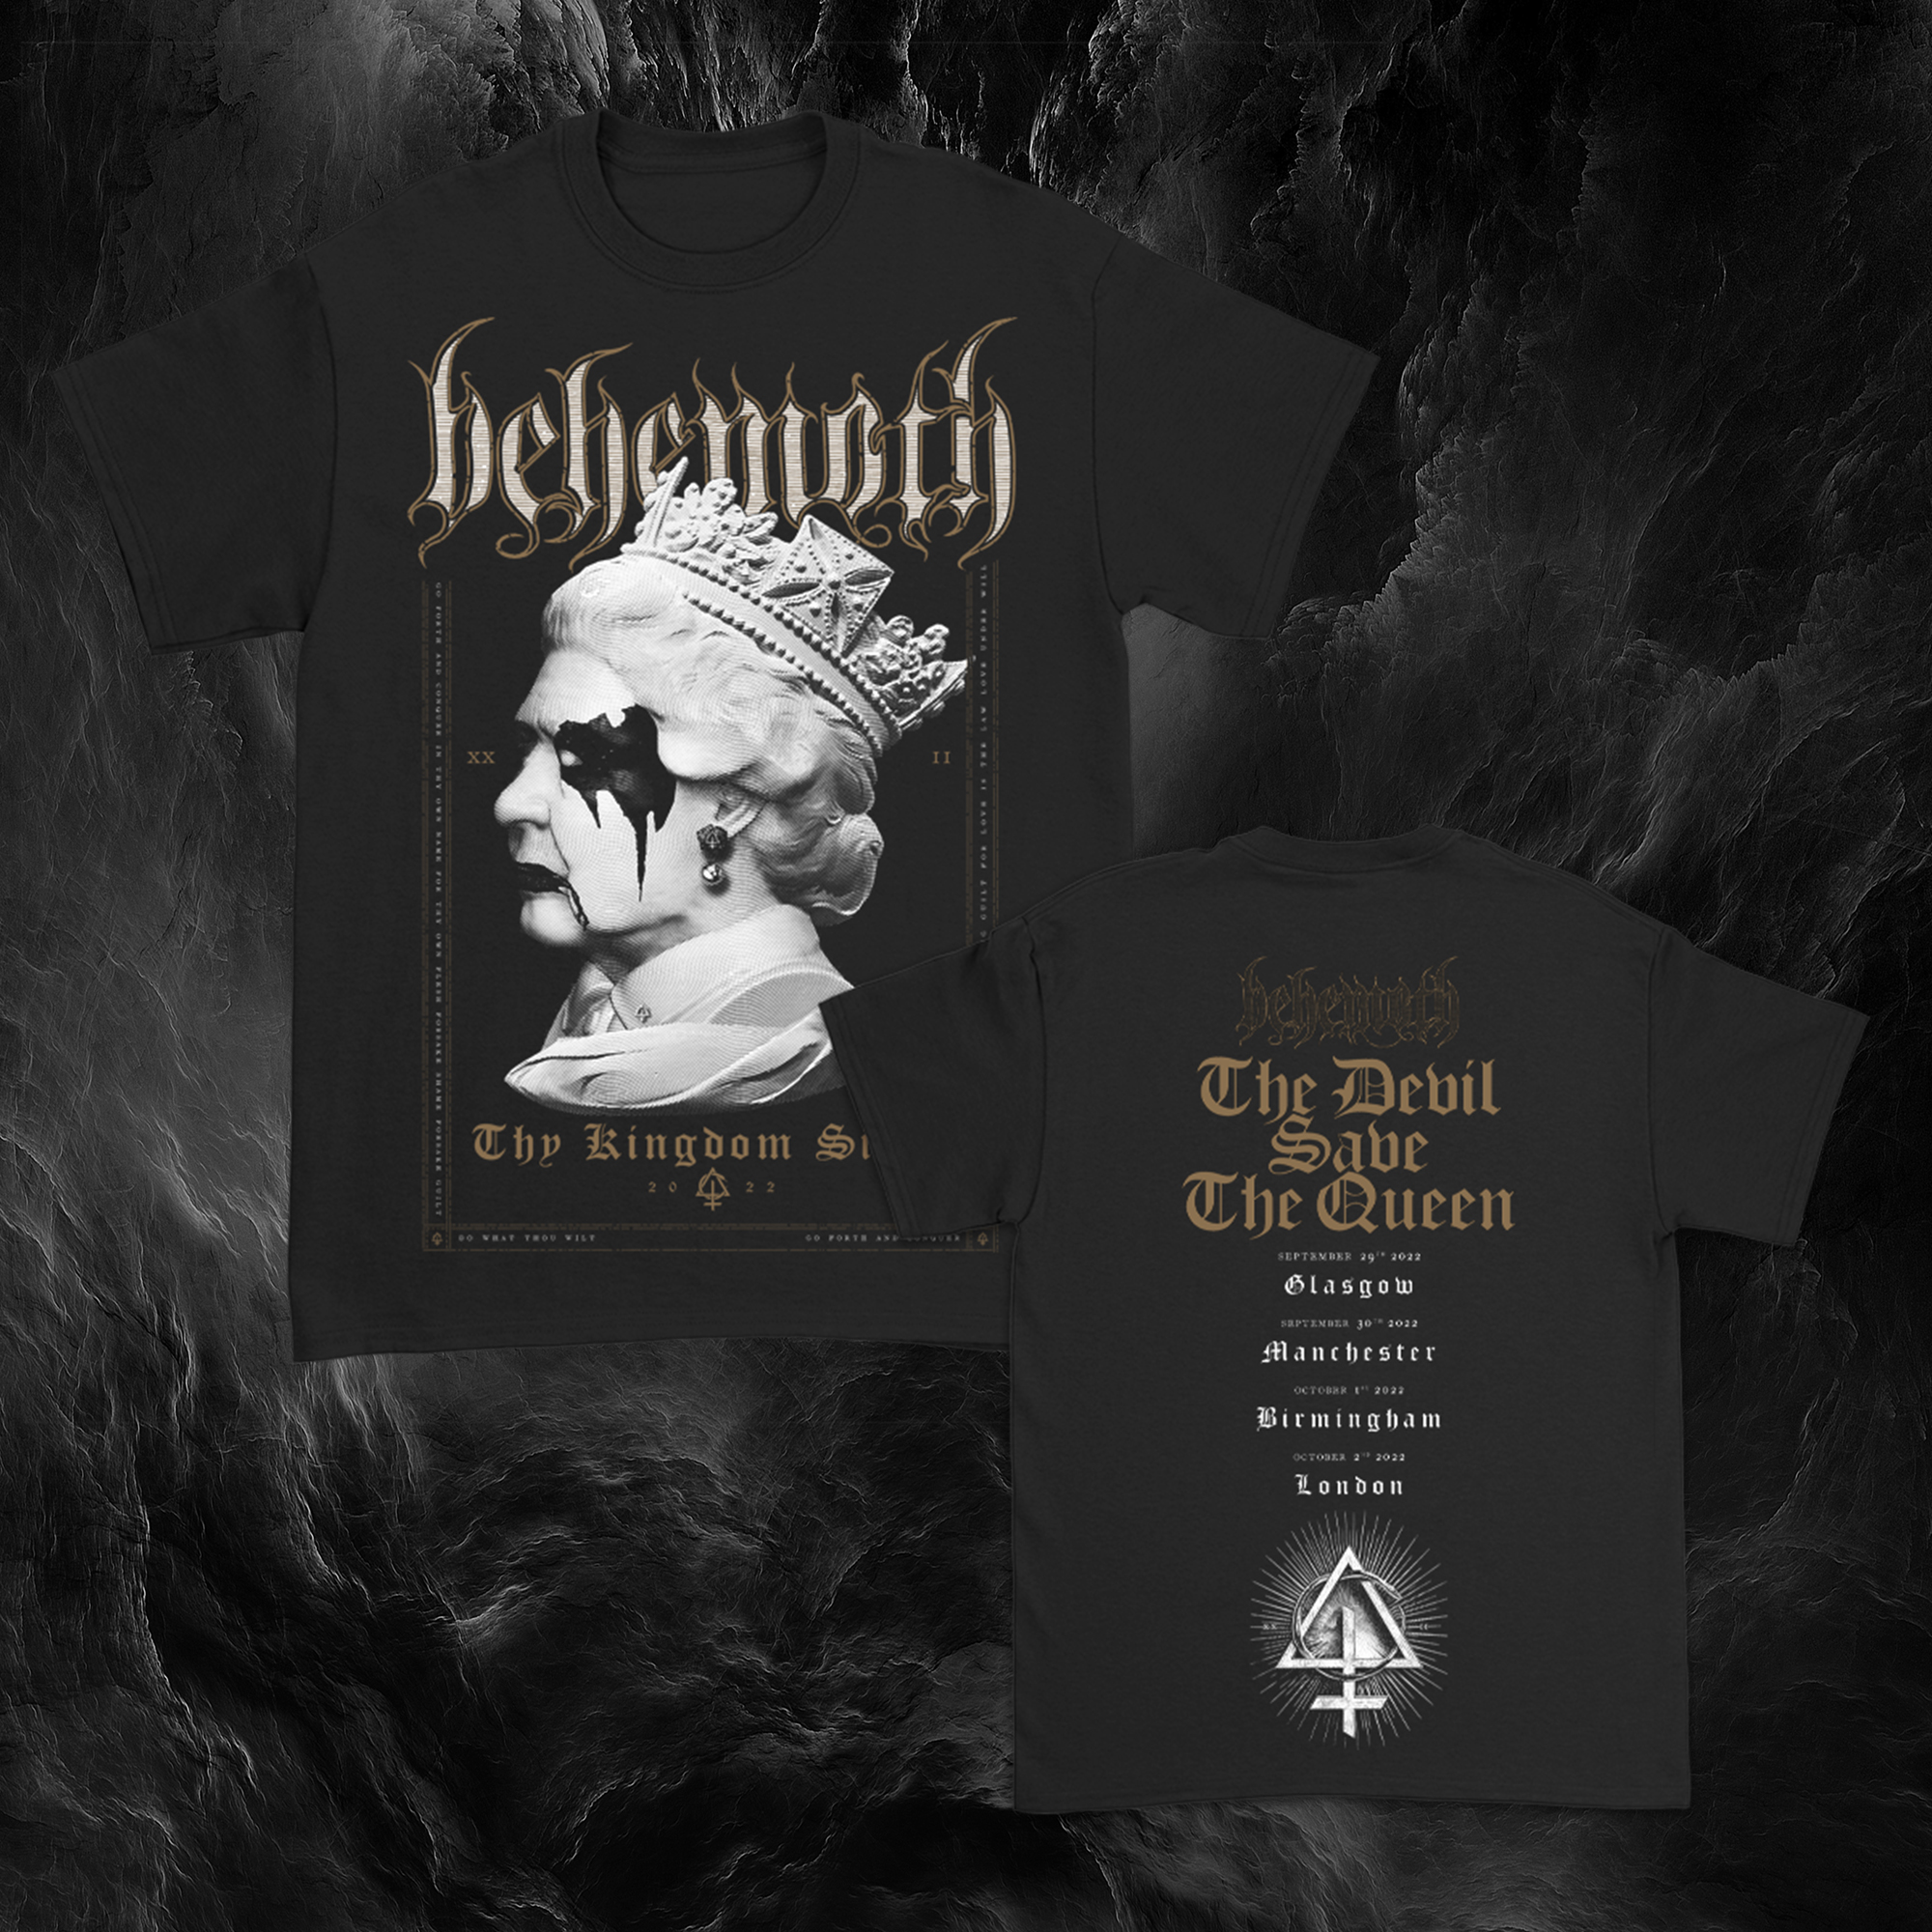 behemoth tshirt pic 1